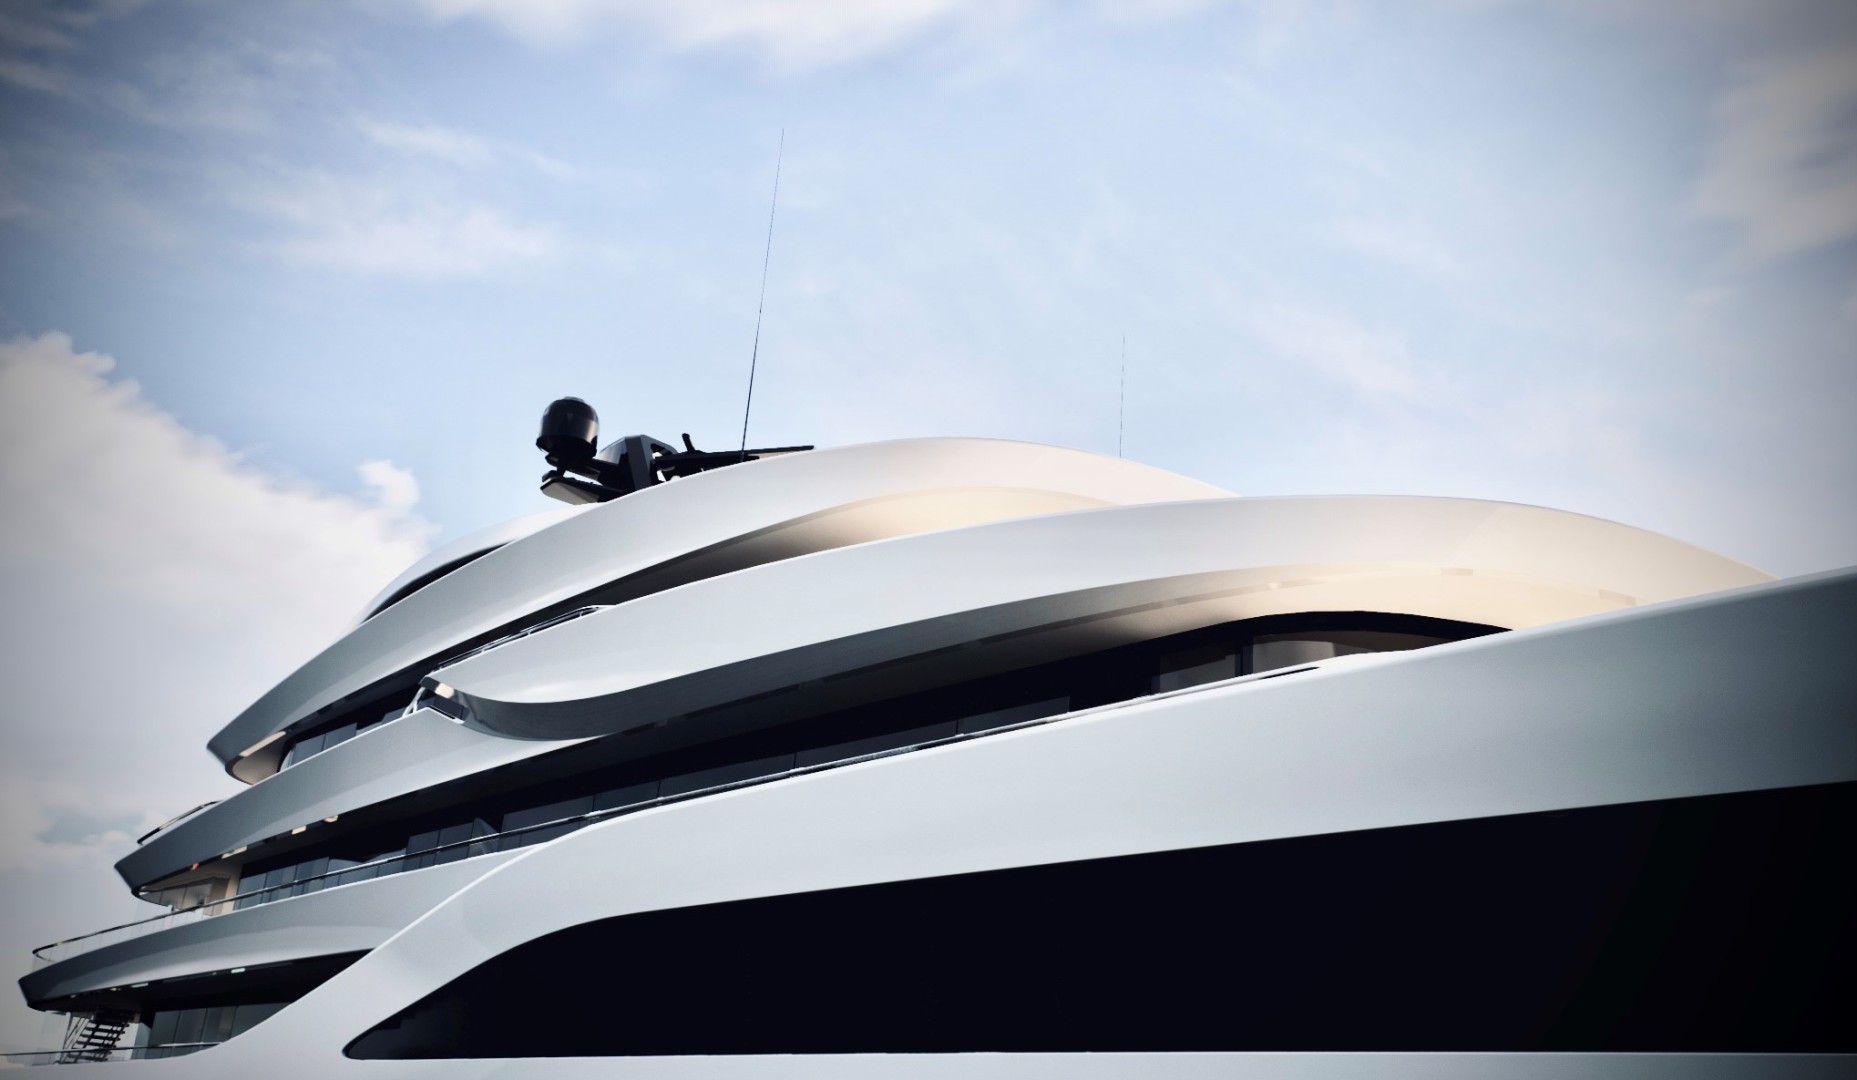 The Italian Sea Group annuncia la vendita di un nuovo megayacht Admiral